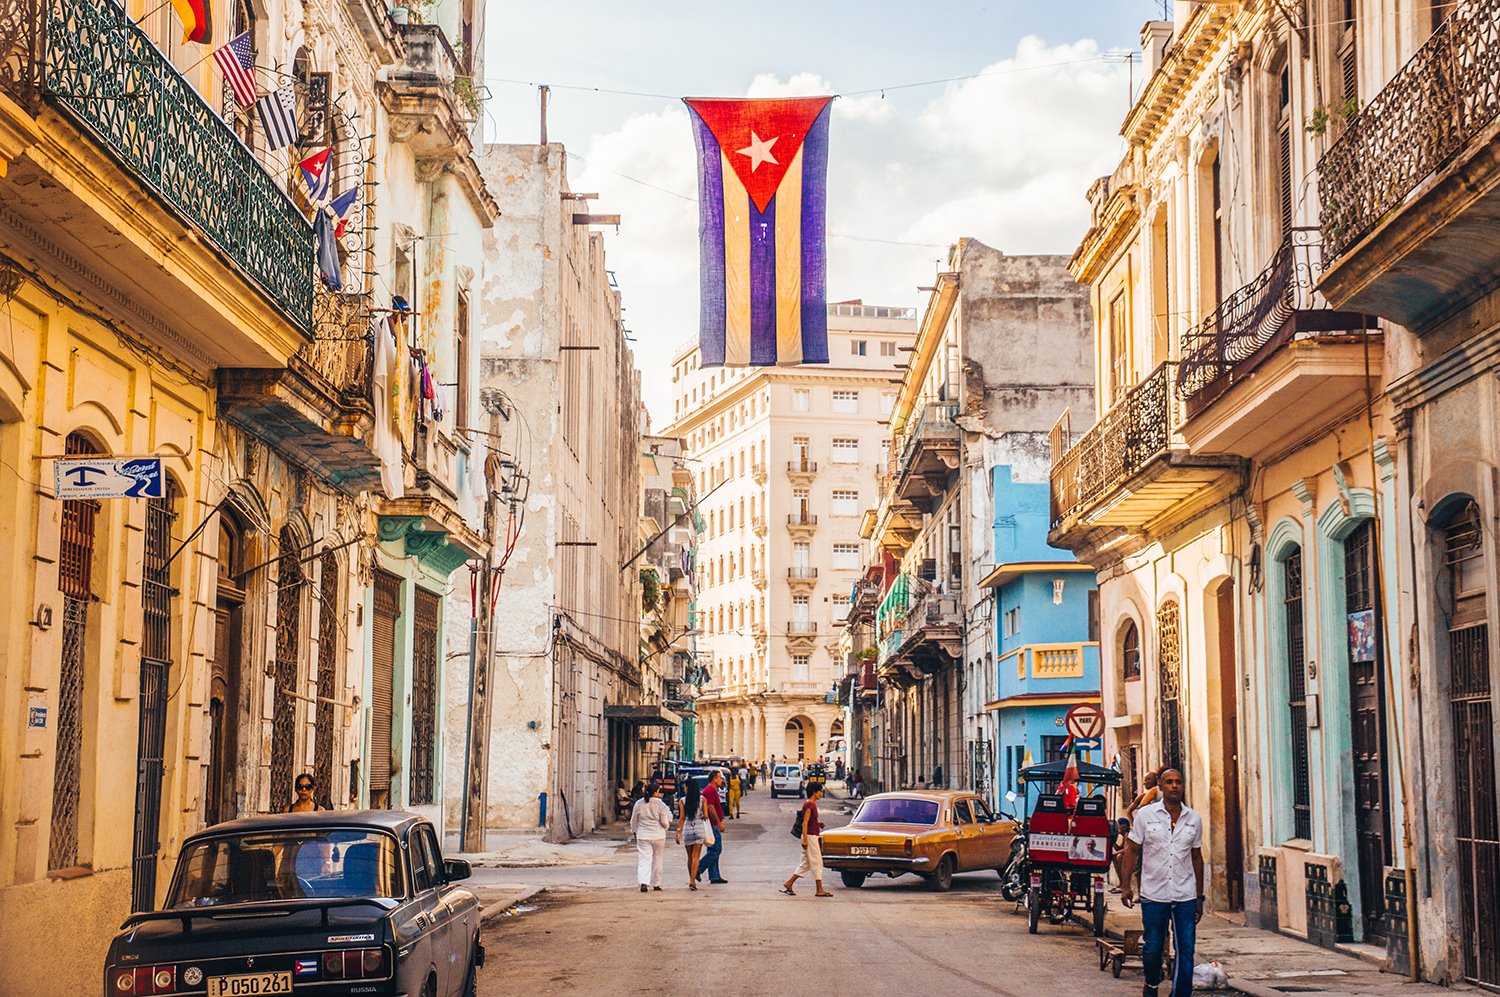 Cuba no patrocina el terrorismo, lo saben en Washington, según The Nation